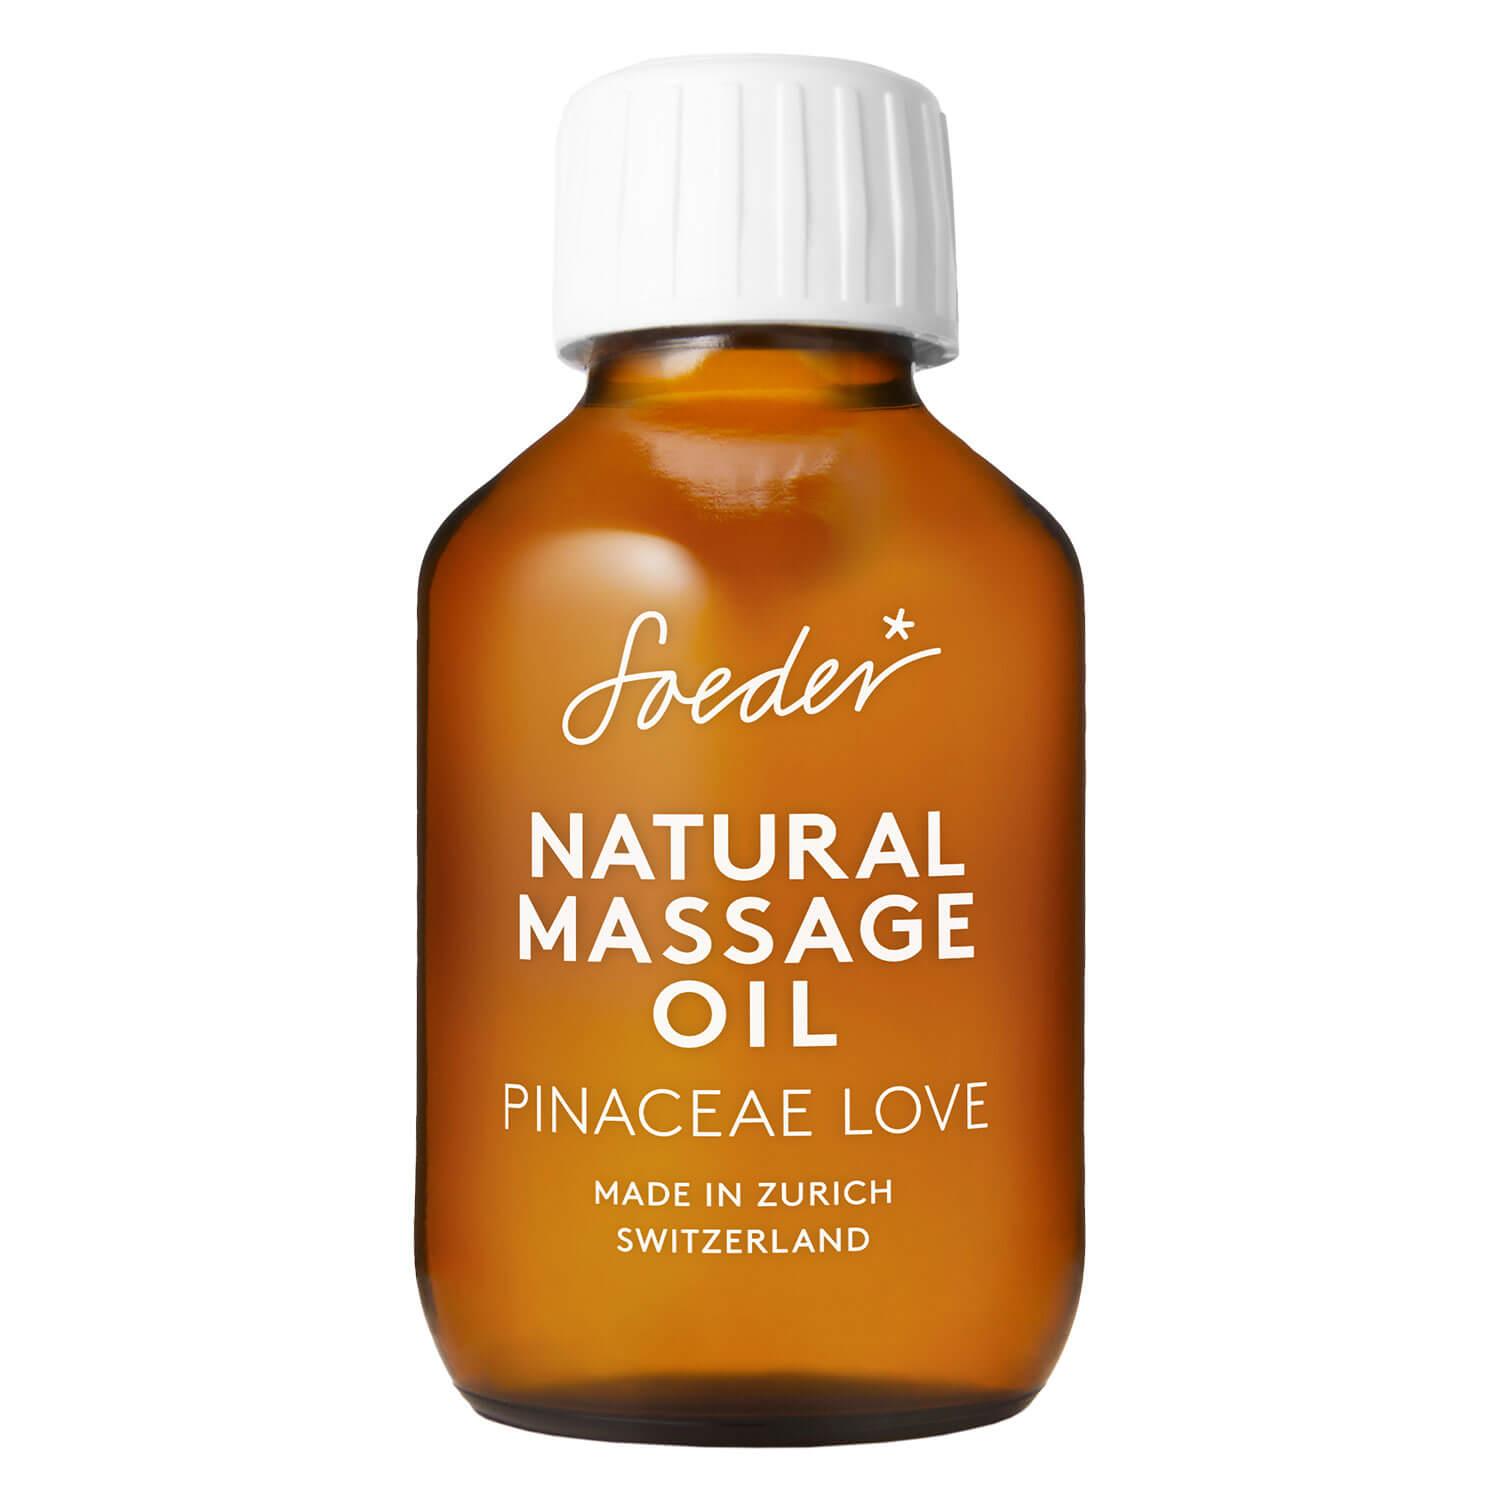 Soeder - Natural Massage Oil Pinaceae Love